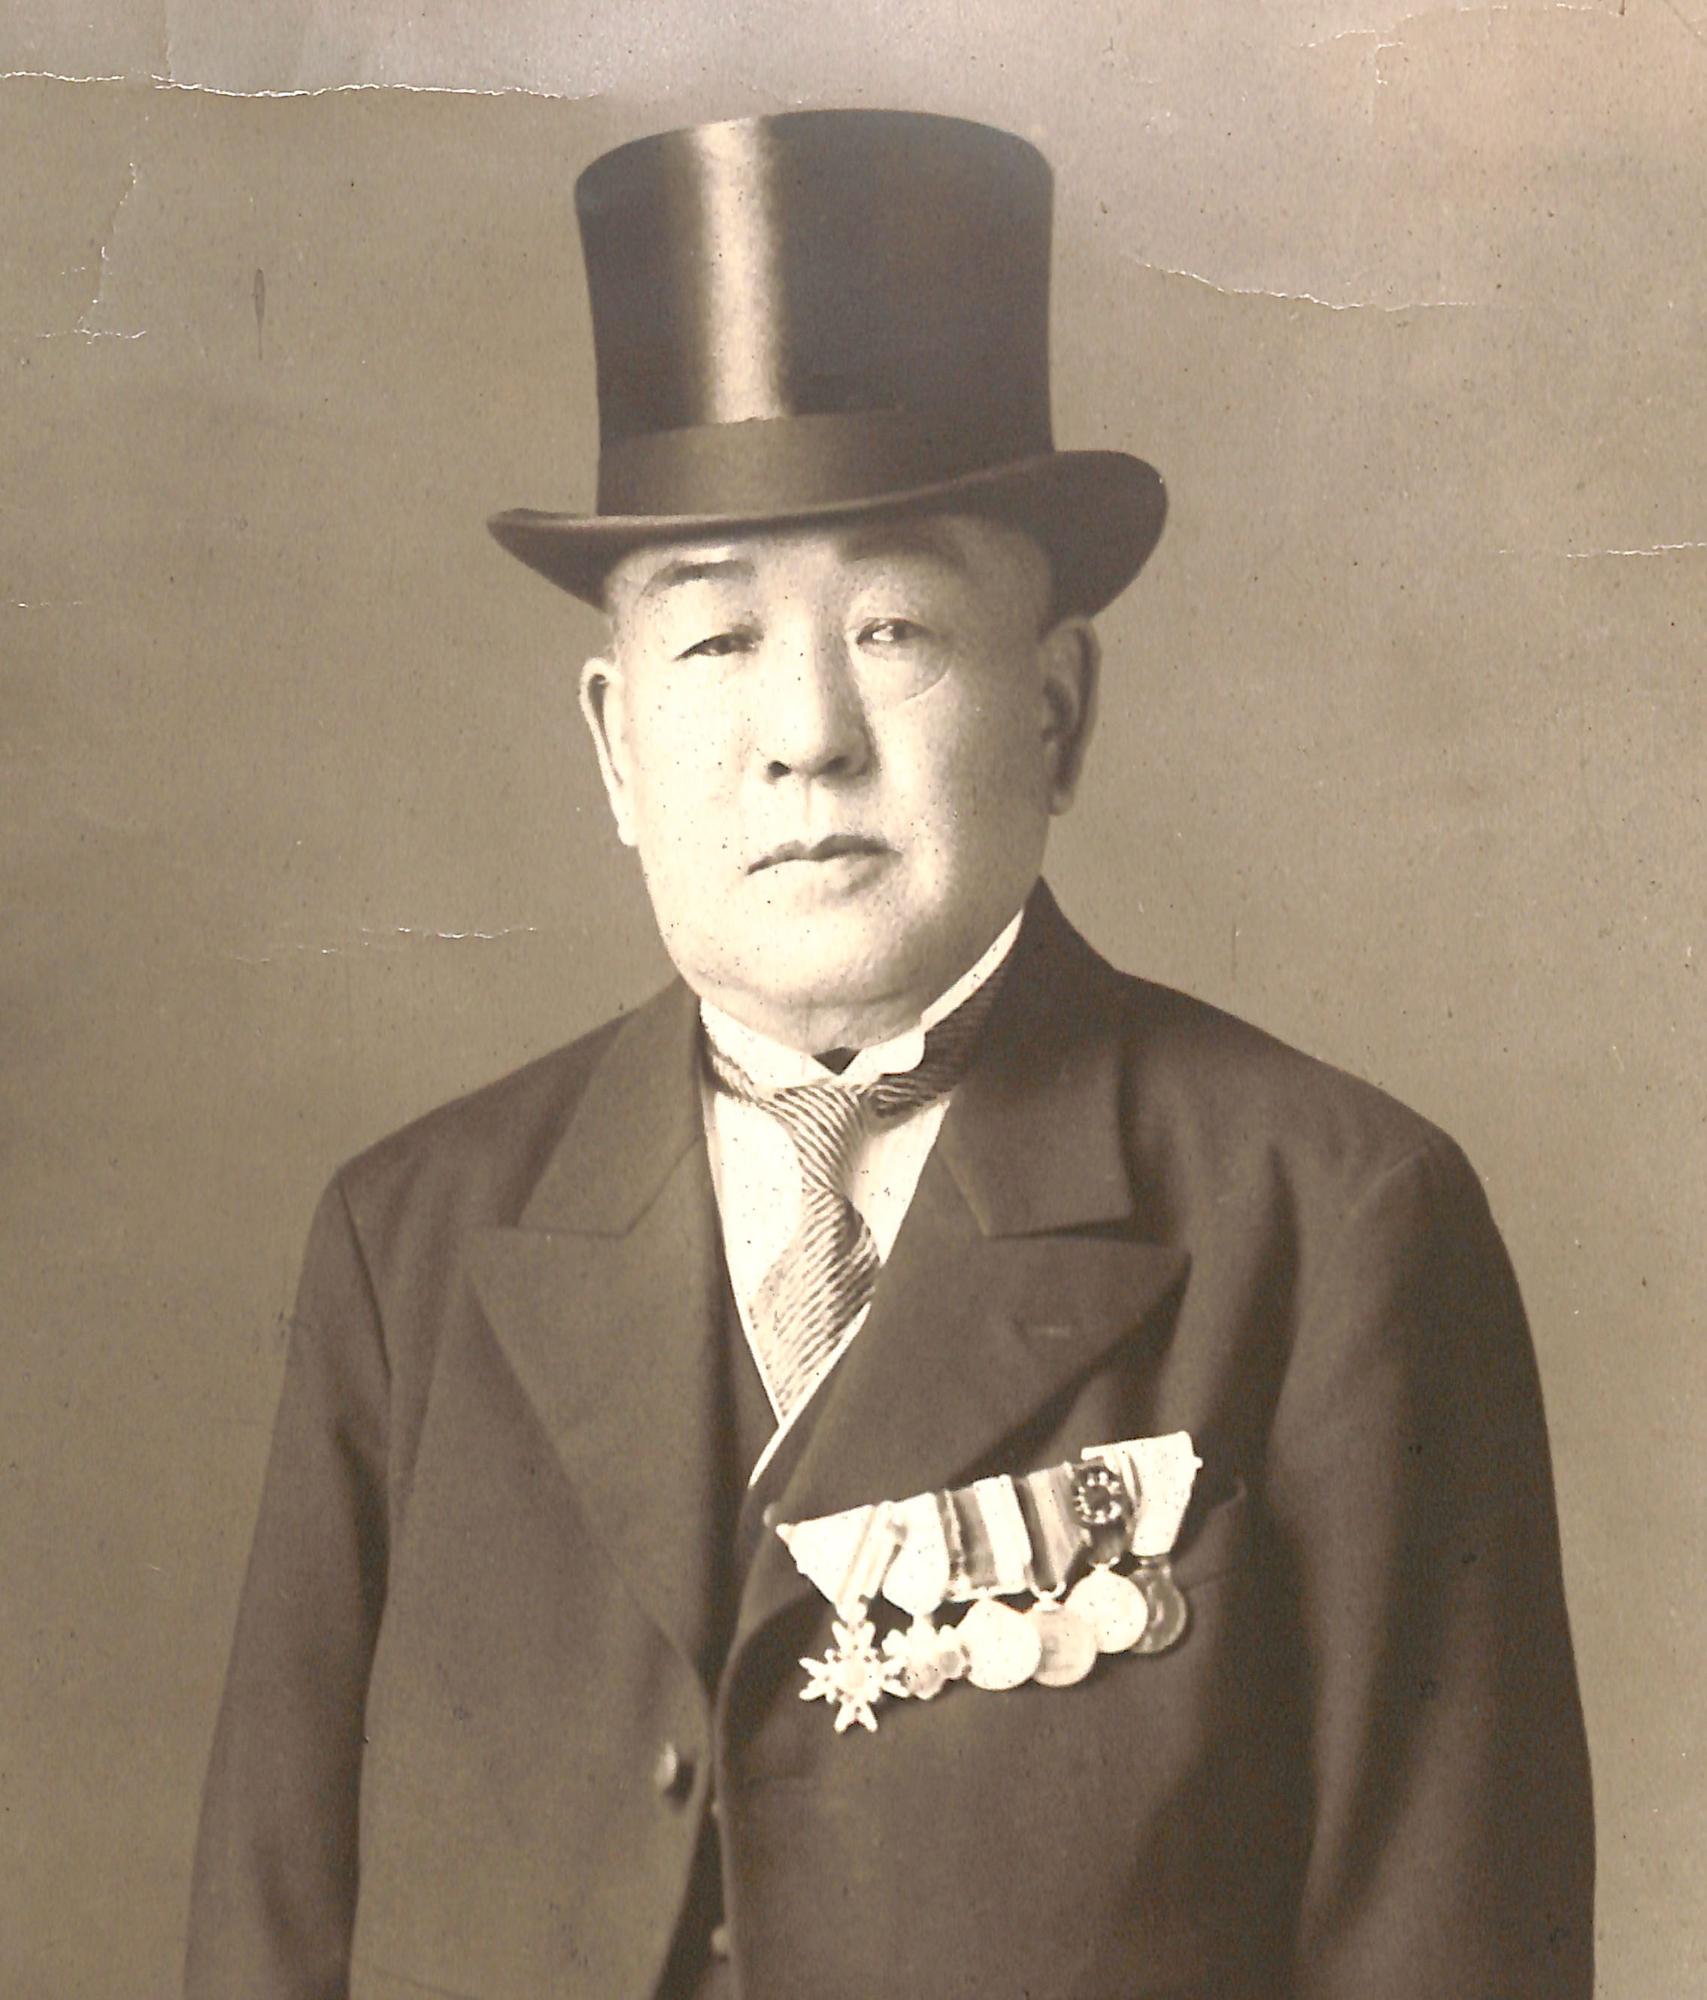 黒のシルクハットとスーツを着用し、左胸に数々の勲章をつけている高柳廣蔵のモノクロ写真